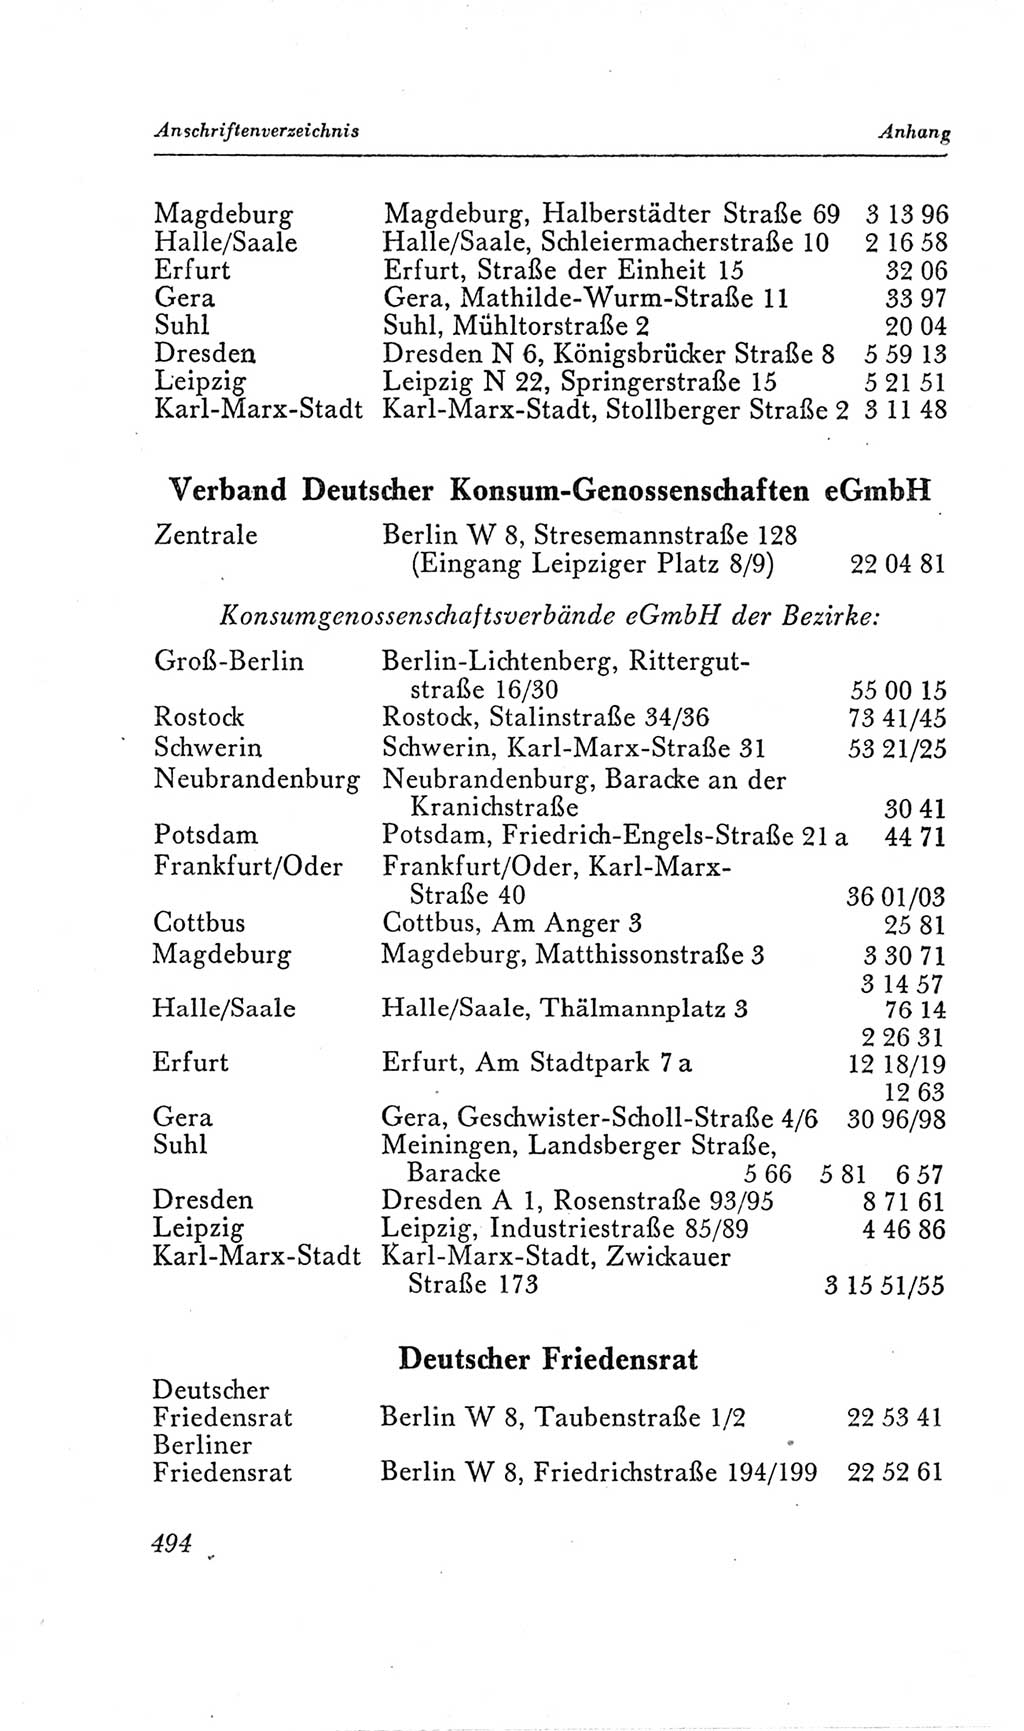 Handbuch der Volkskammer (VK) der Deutschen Demokratischen Republik (DDR), 2. Wahlperiode 1954-1958, Seite 494 (Hdb. VK. DDR, 2. WP. 1954-1958, S. 494)